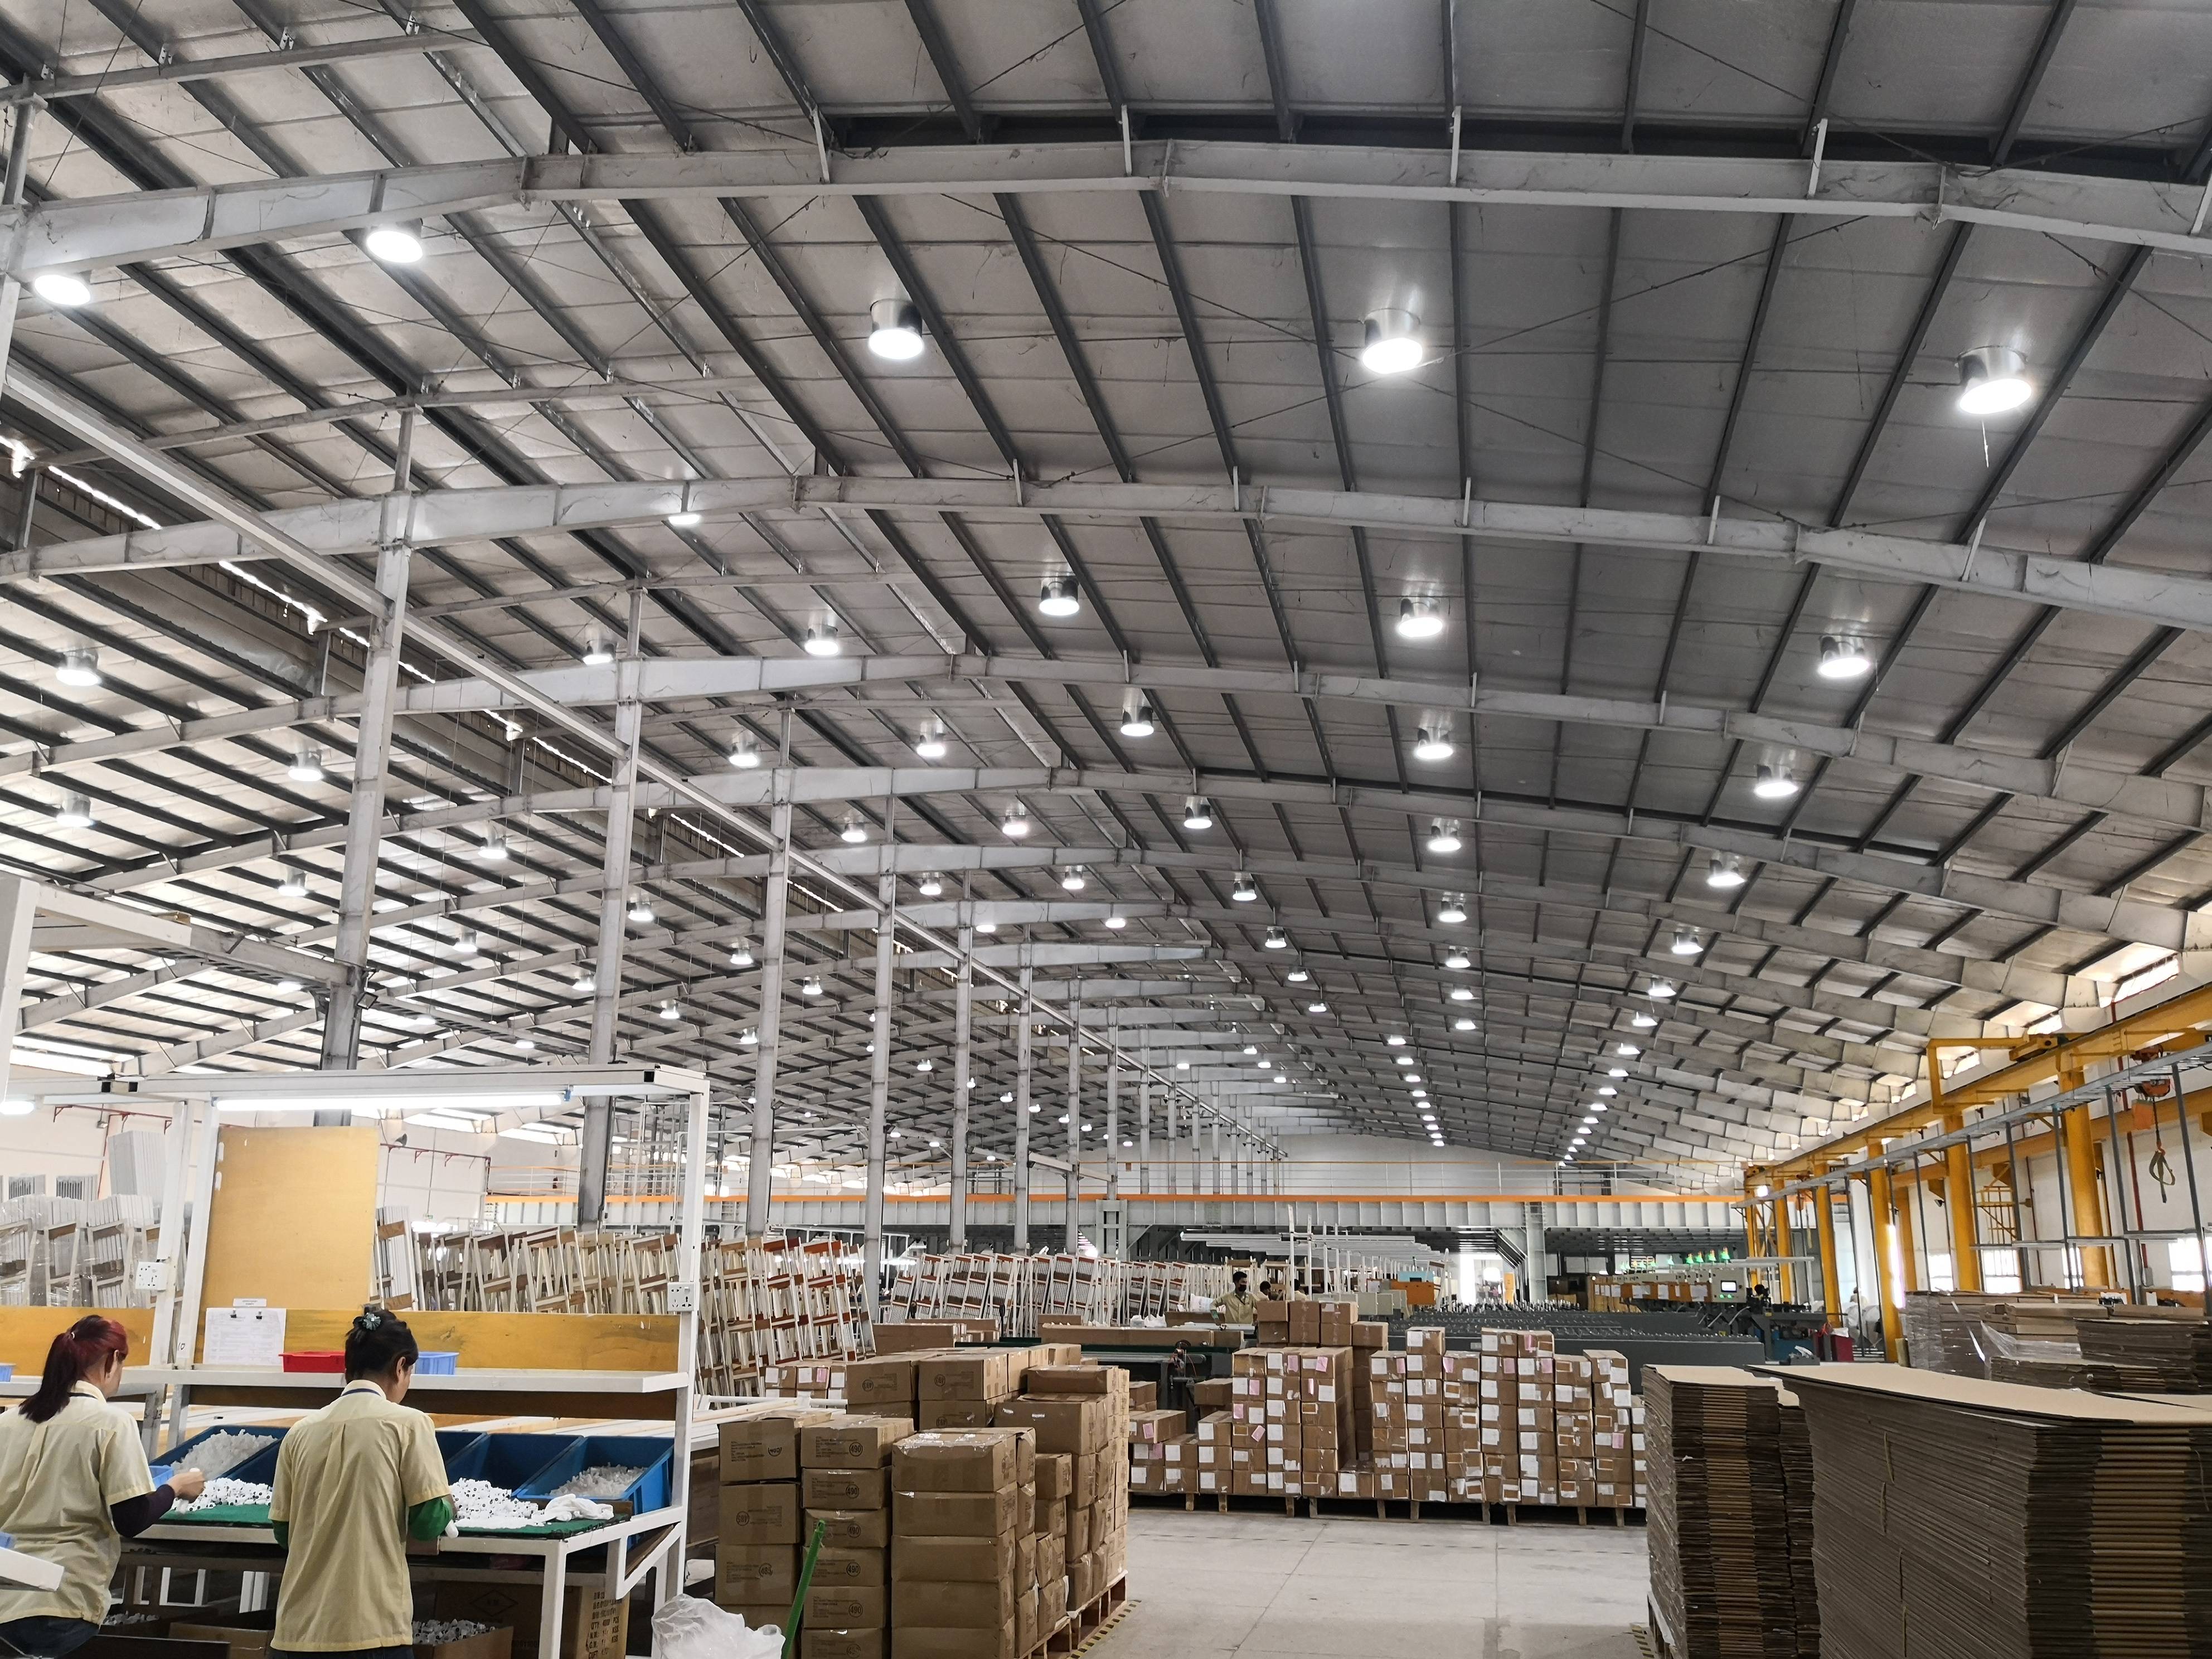 导光管日光照明系统应用在工厂,解决工厂白天采光问题